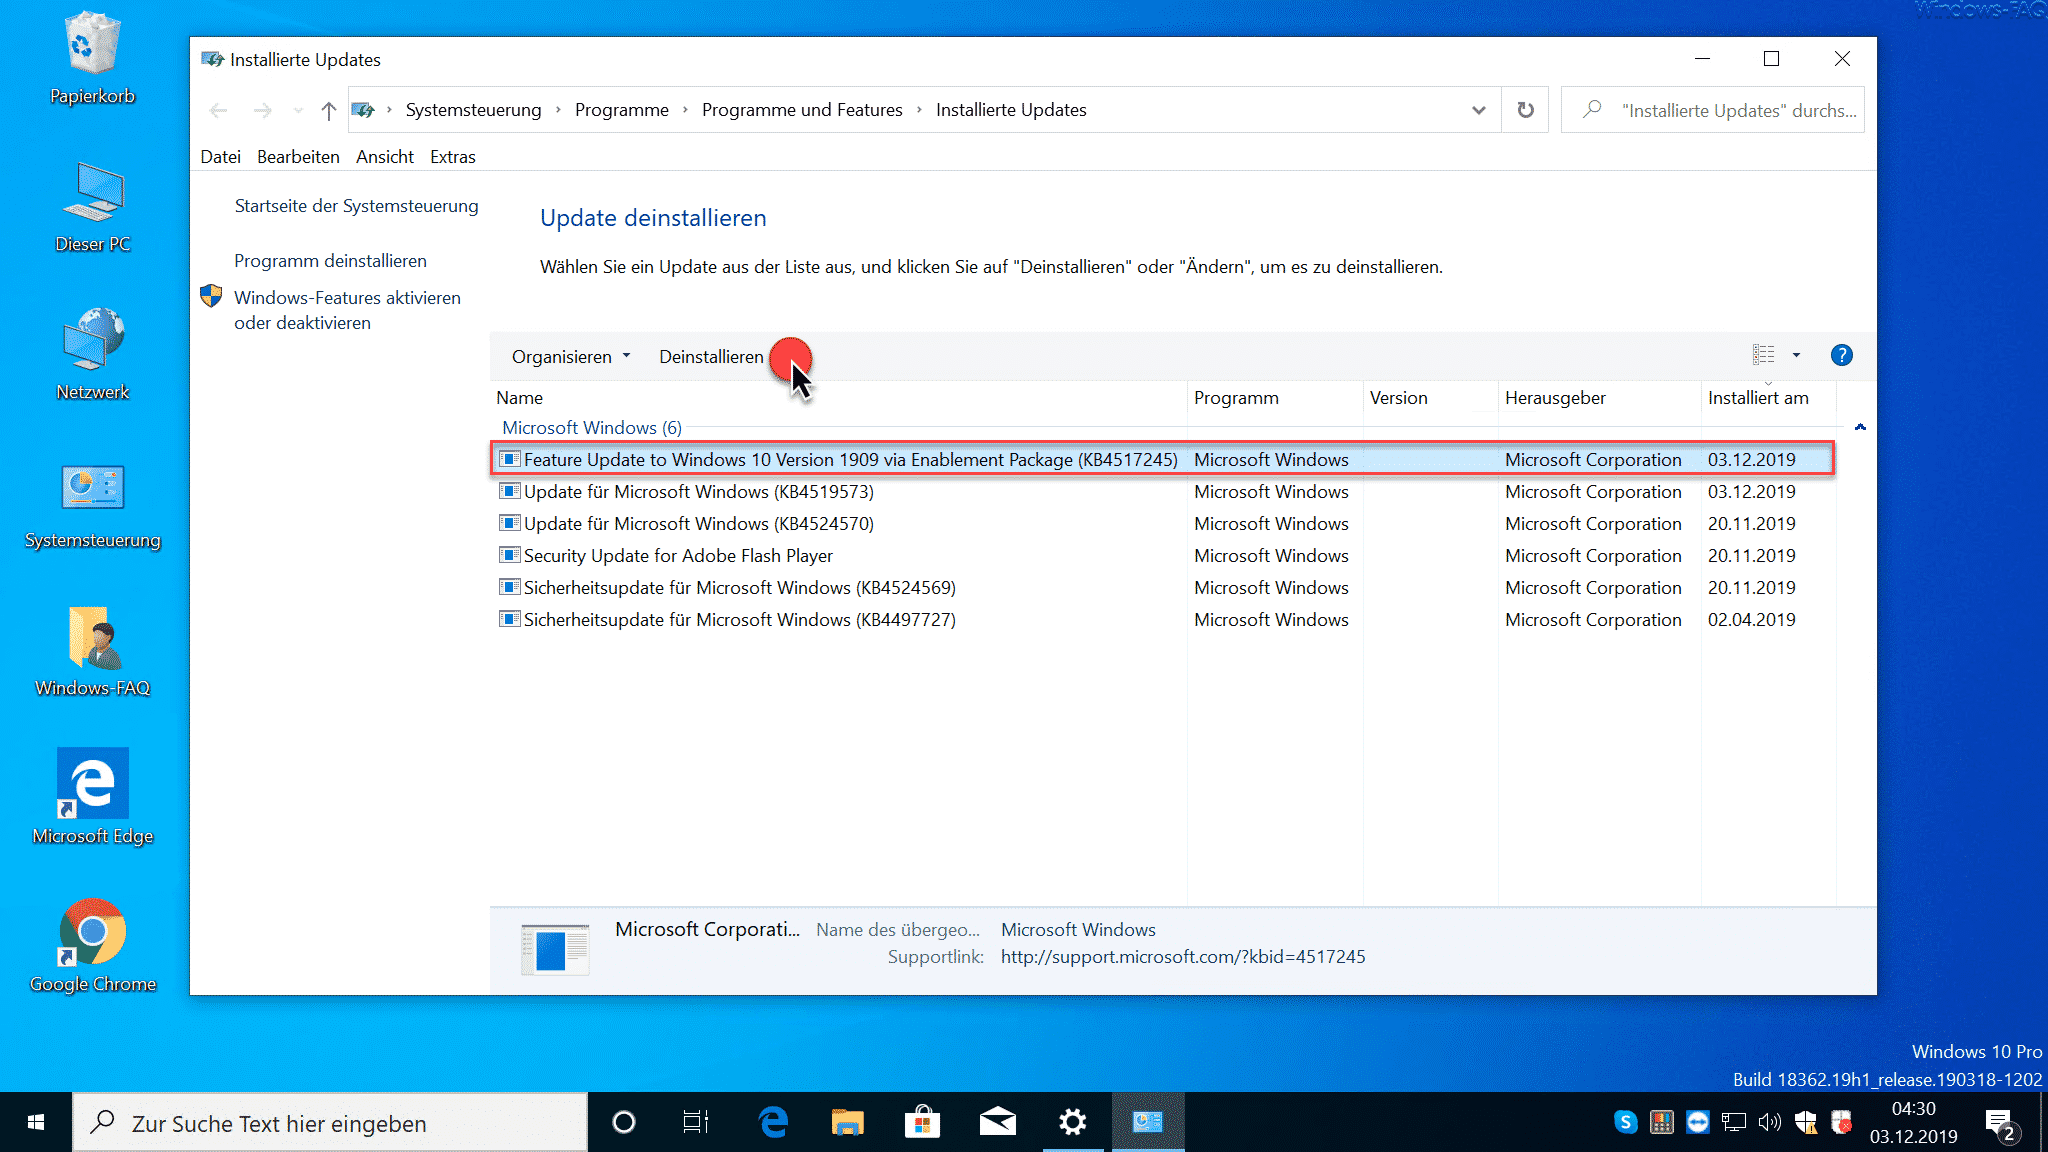 Feature Update to Windows 10 Version 1909 KB4517245 deinstallieren